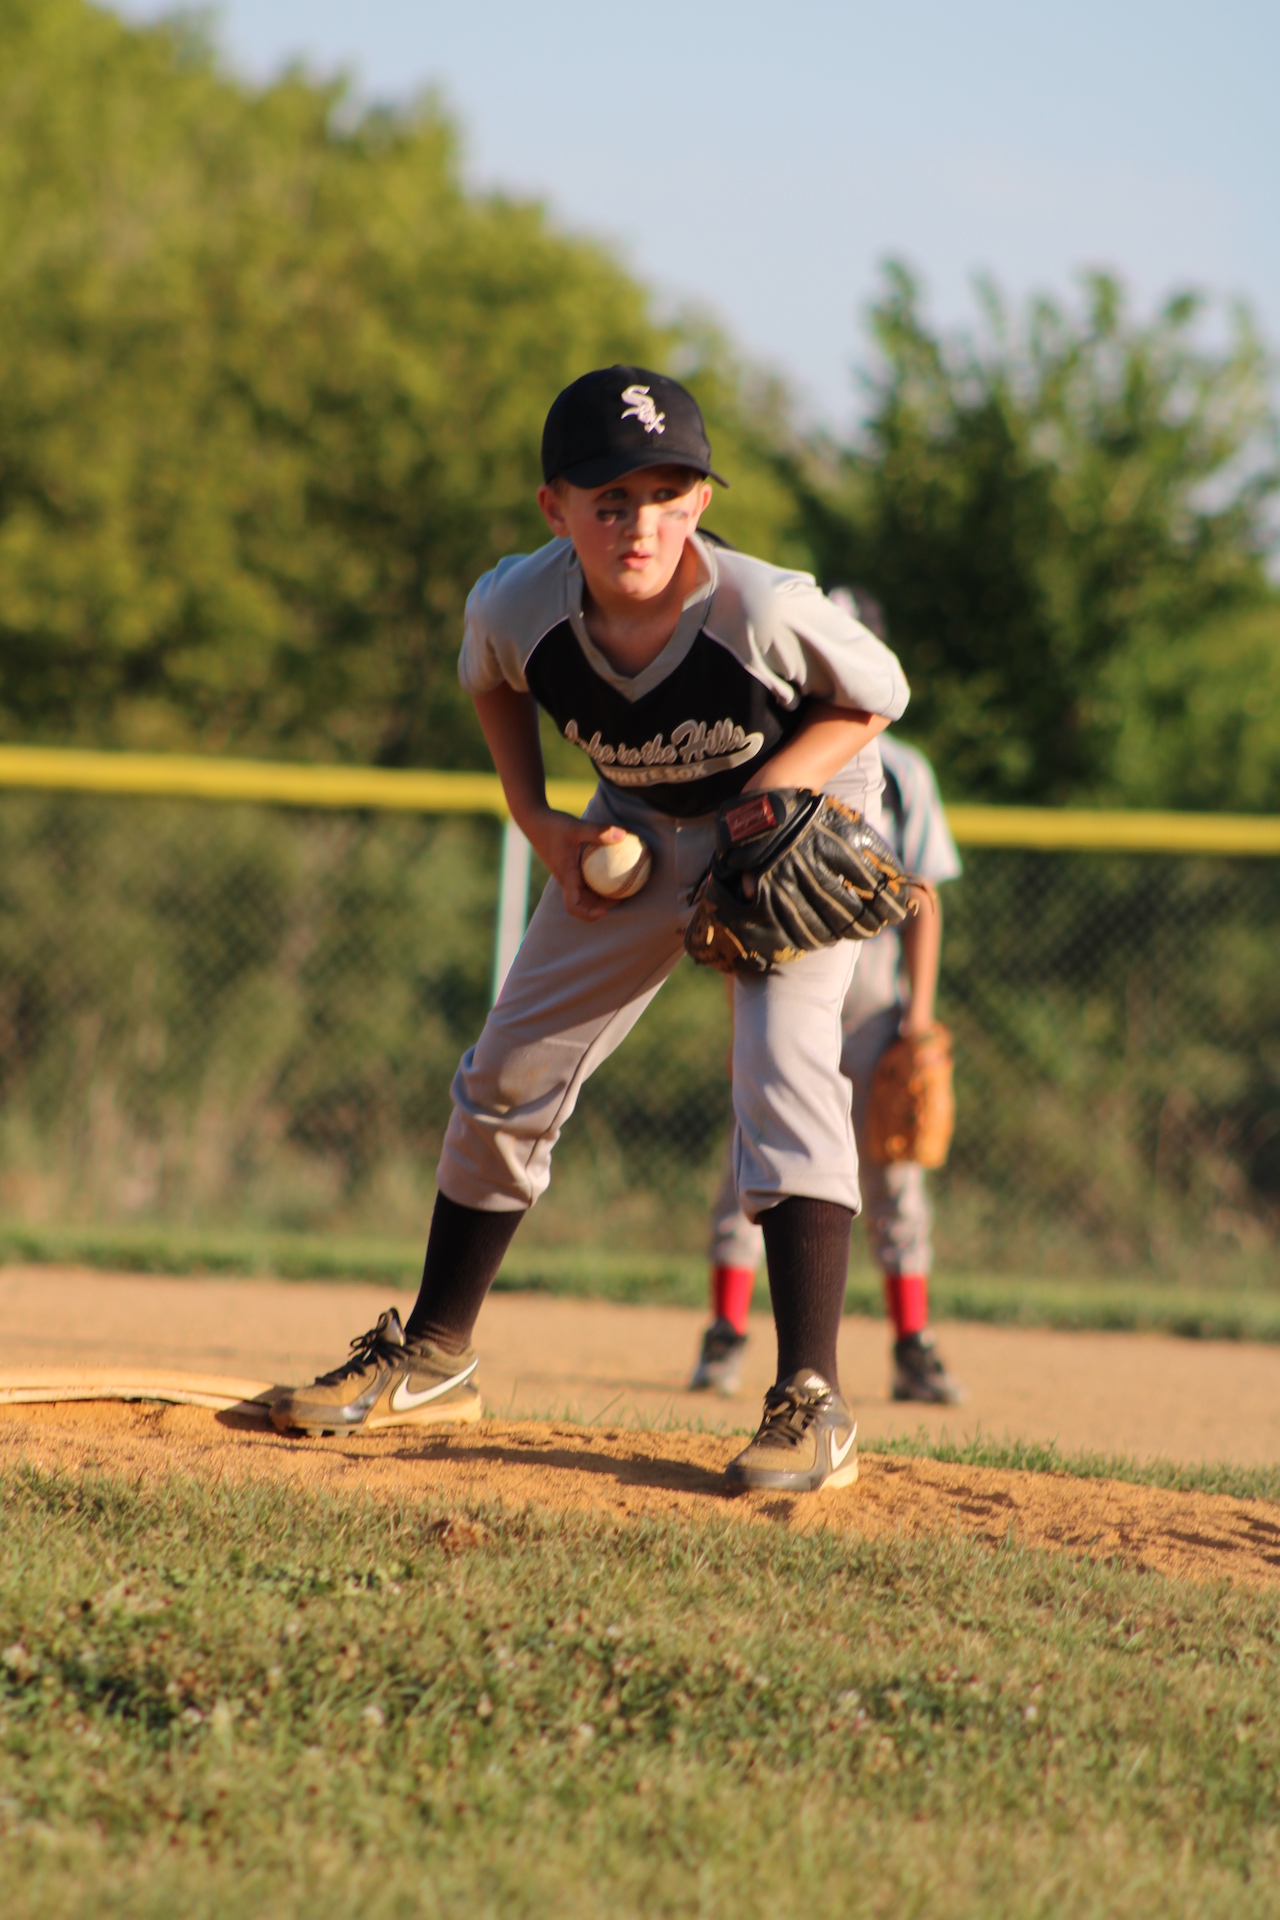 Lake Bluff Youth Baseball Association